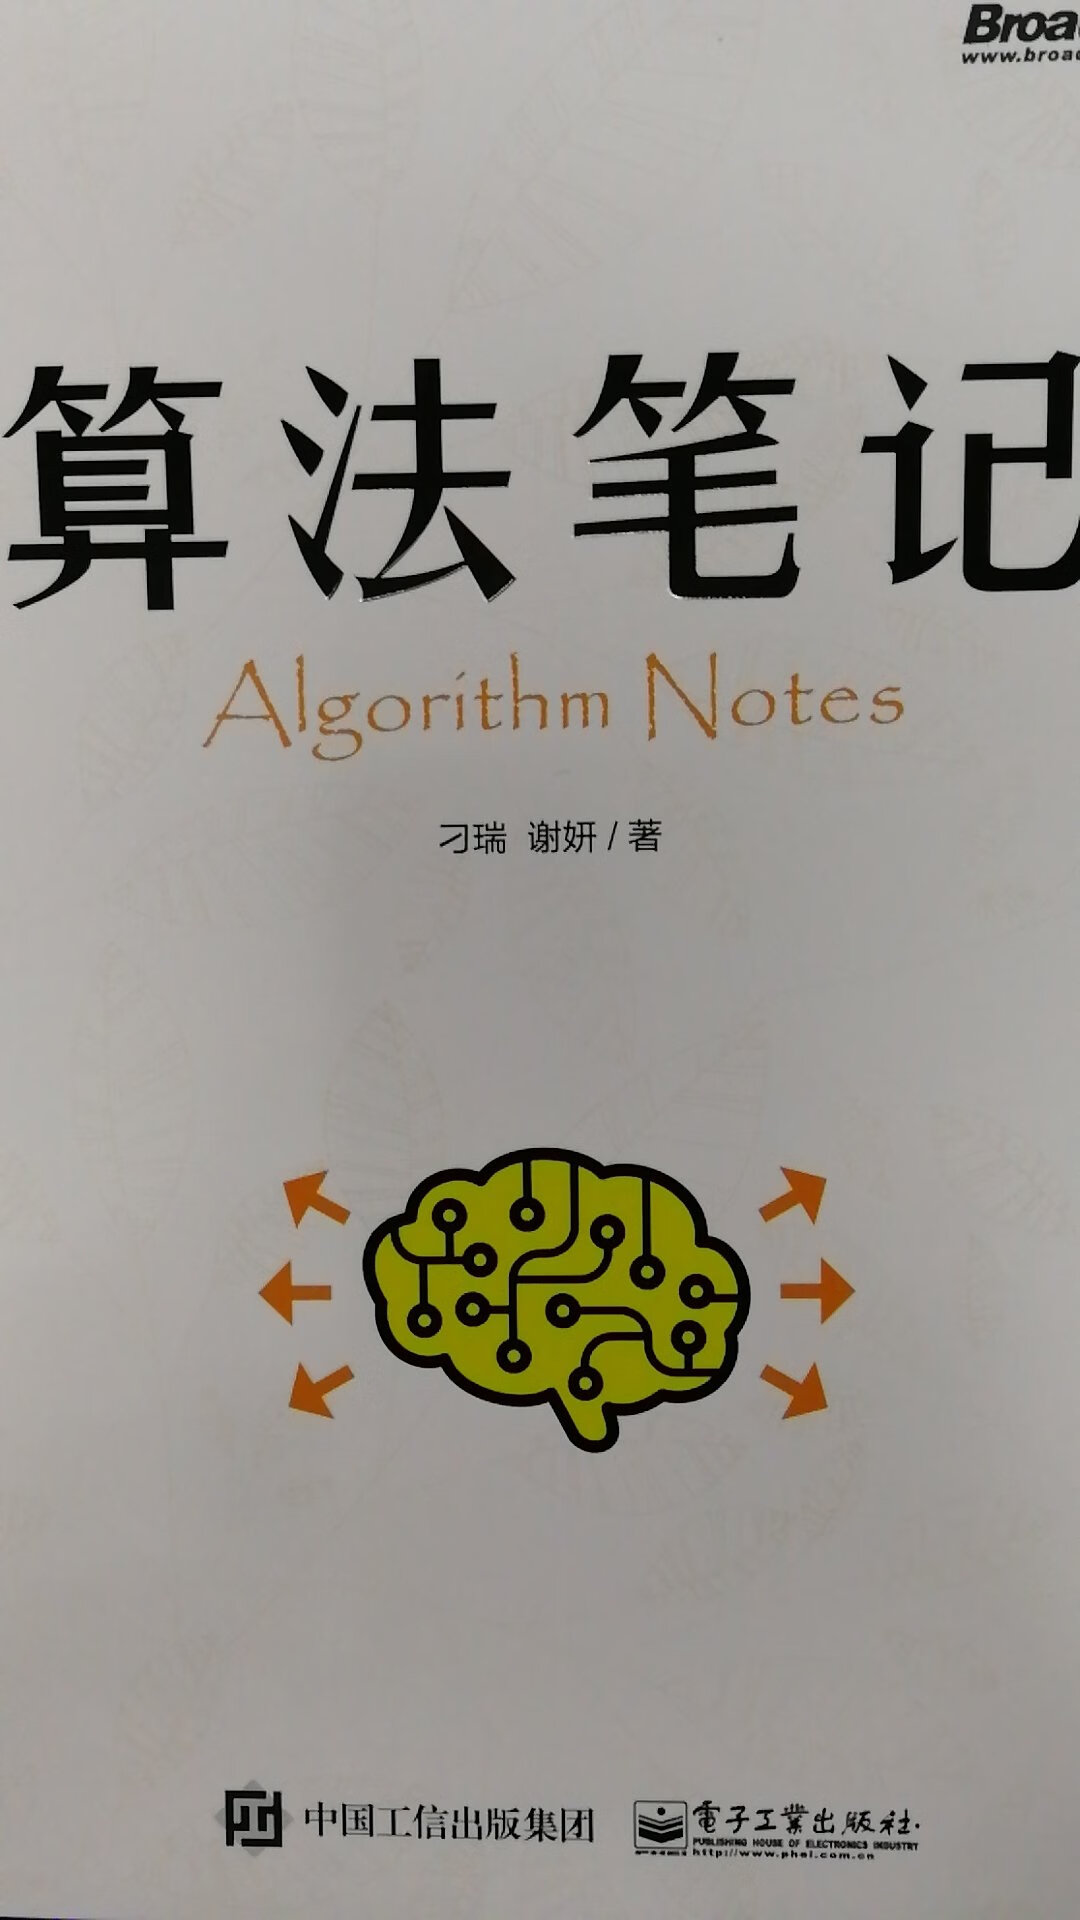 算法笔记，学习算法很好的一本书，听同学推荐买的，希望有所提高，继续努力，加油加油哇！！！